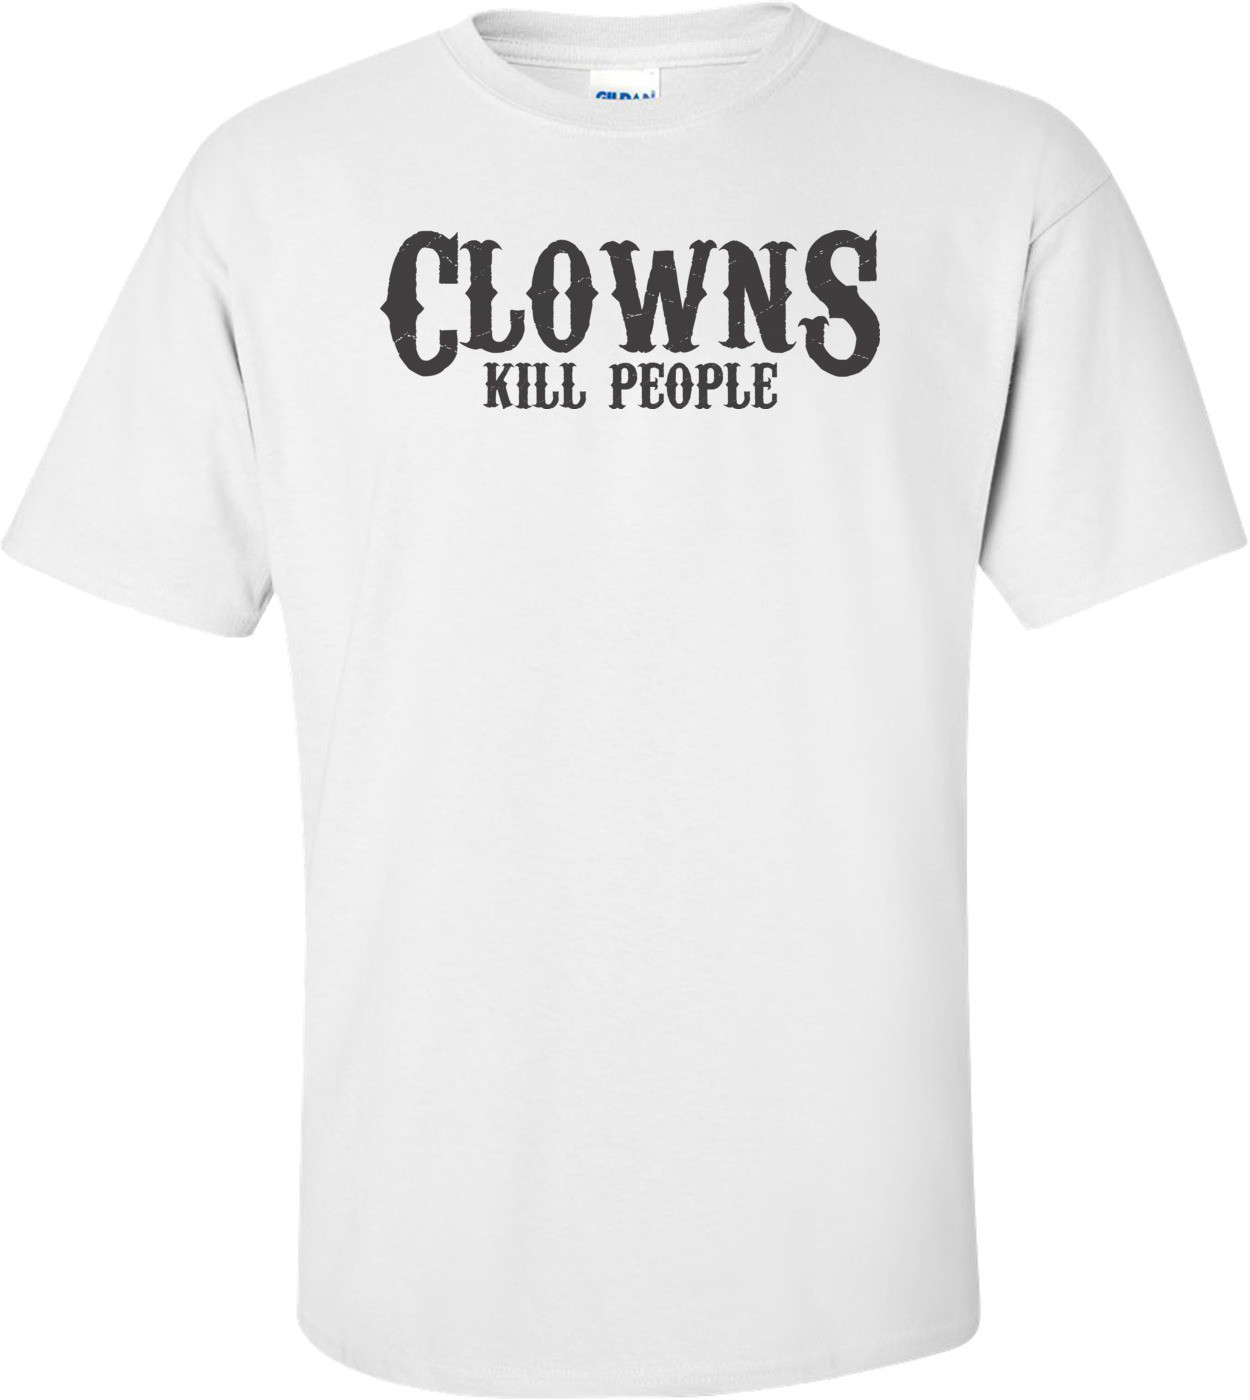 Clowns Kill People T-shirt